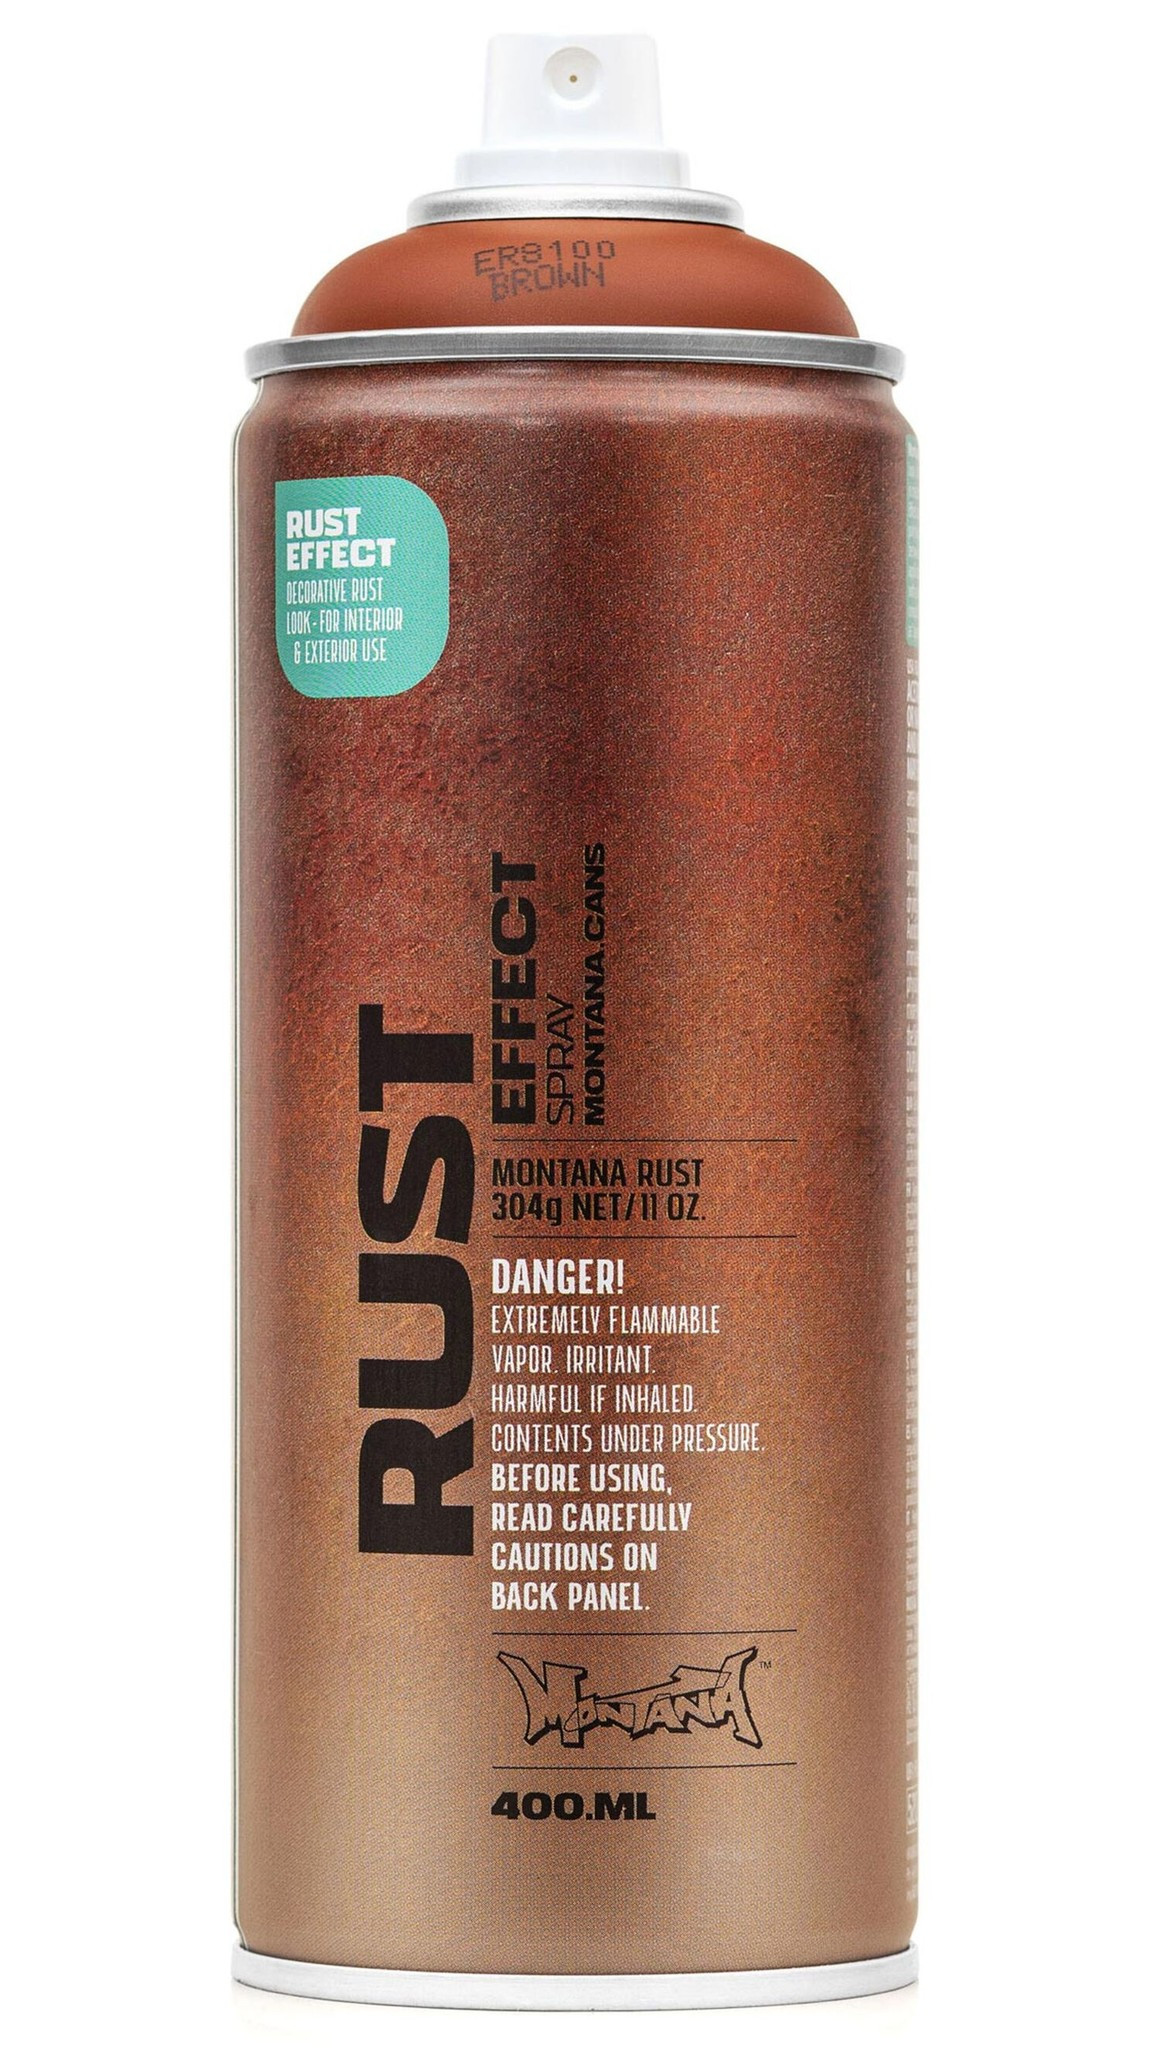 Montana Rust Effect ER8100 Brown - 400 ML